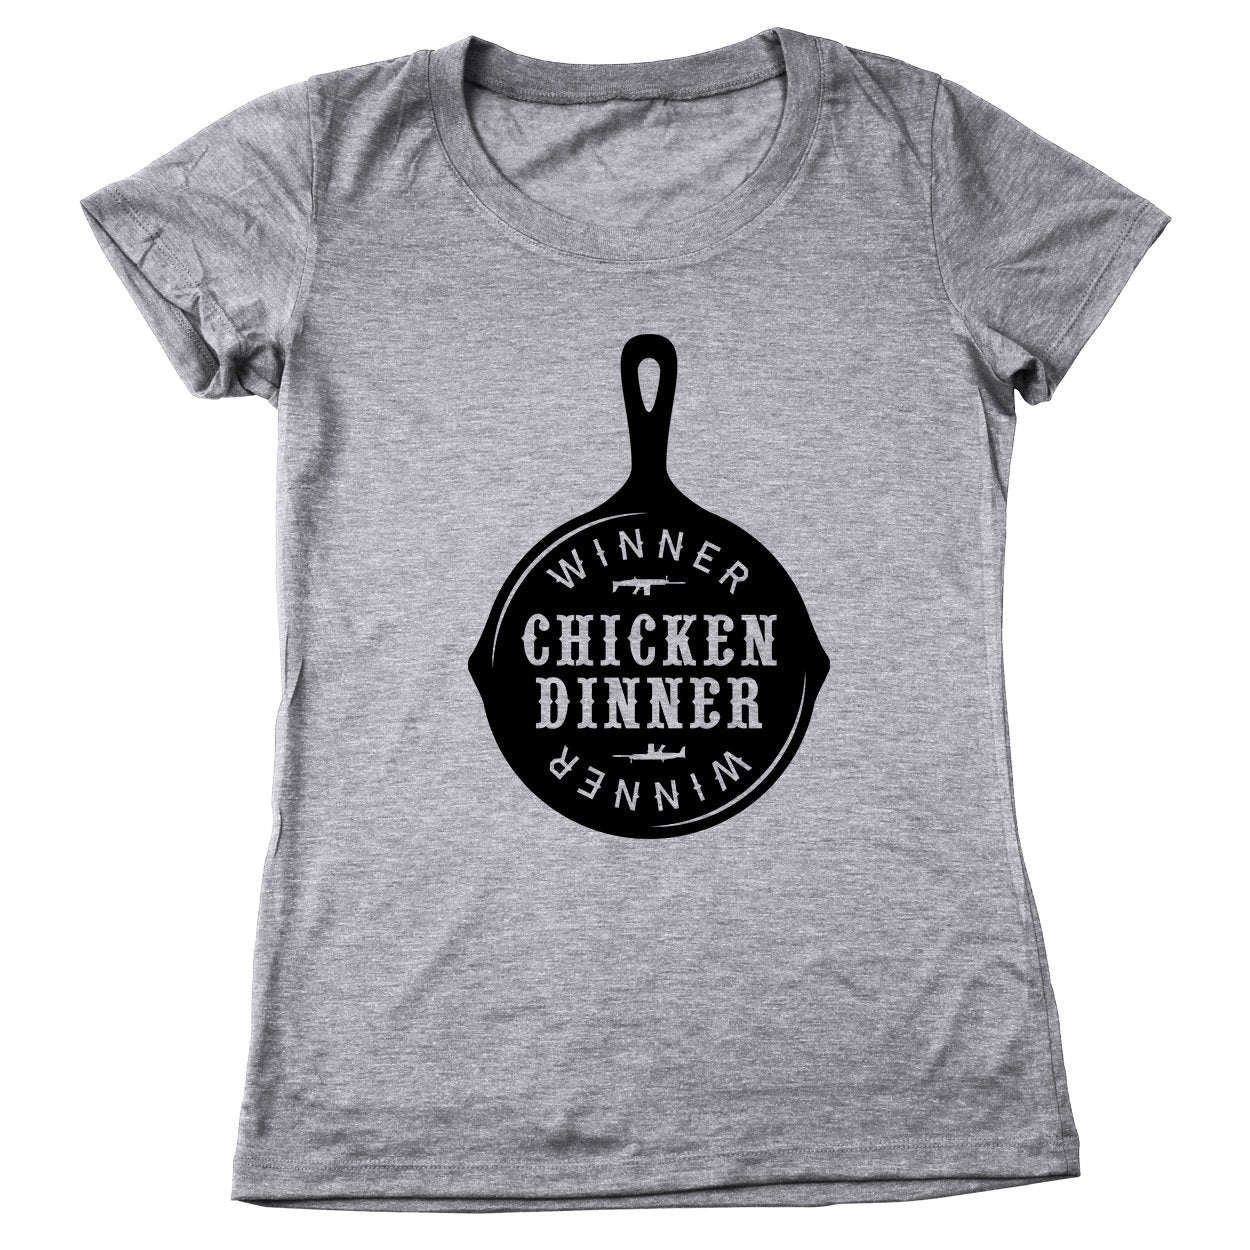 Battleground Chicken Dinner Women's Relaxed Fit Tri-Blend T-Shirt